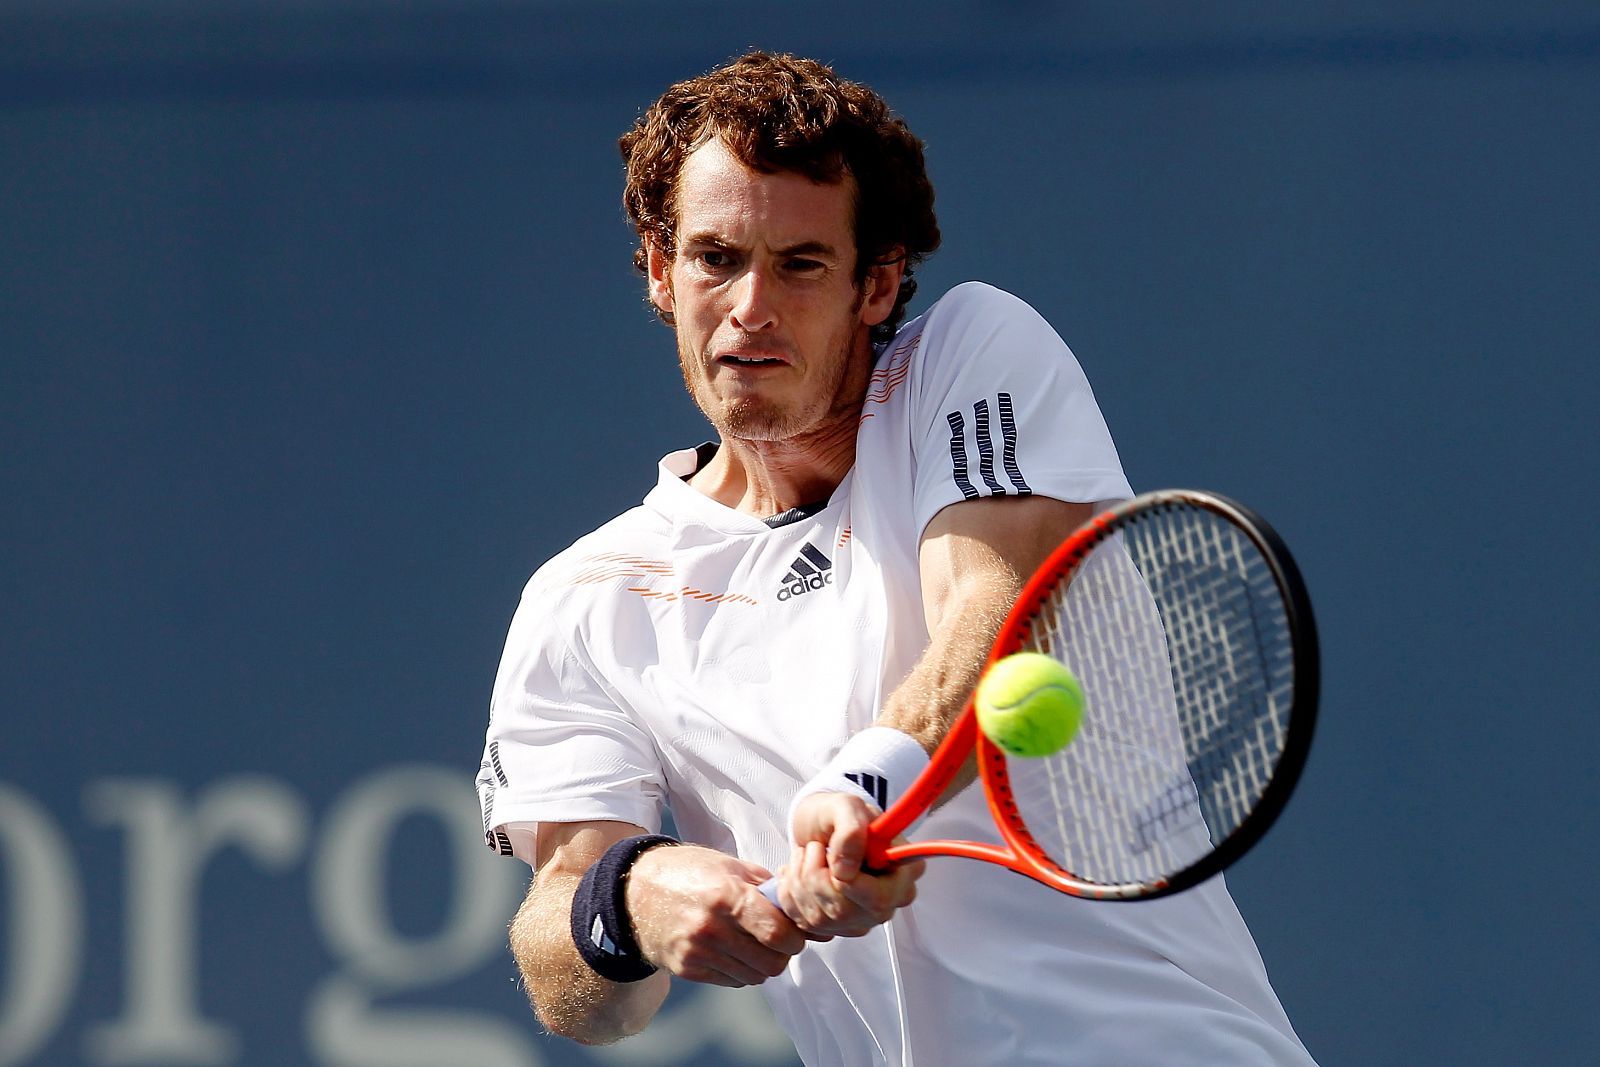 Imagen del tenista británico Andy Murray durante su partido de semifinales ante Berdych.